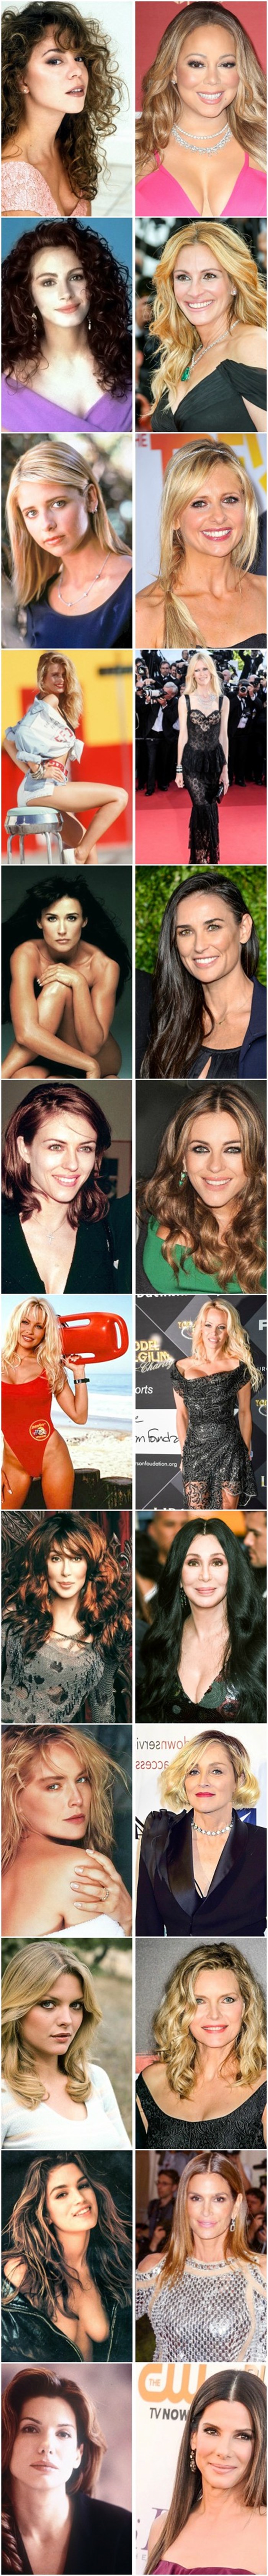 Pogledajte kako najljepše žene devedesetih izgledaju danas